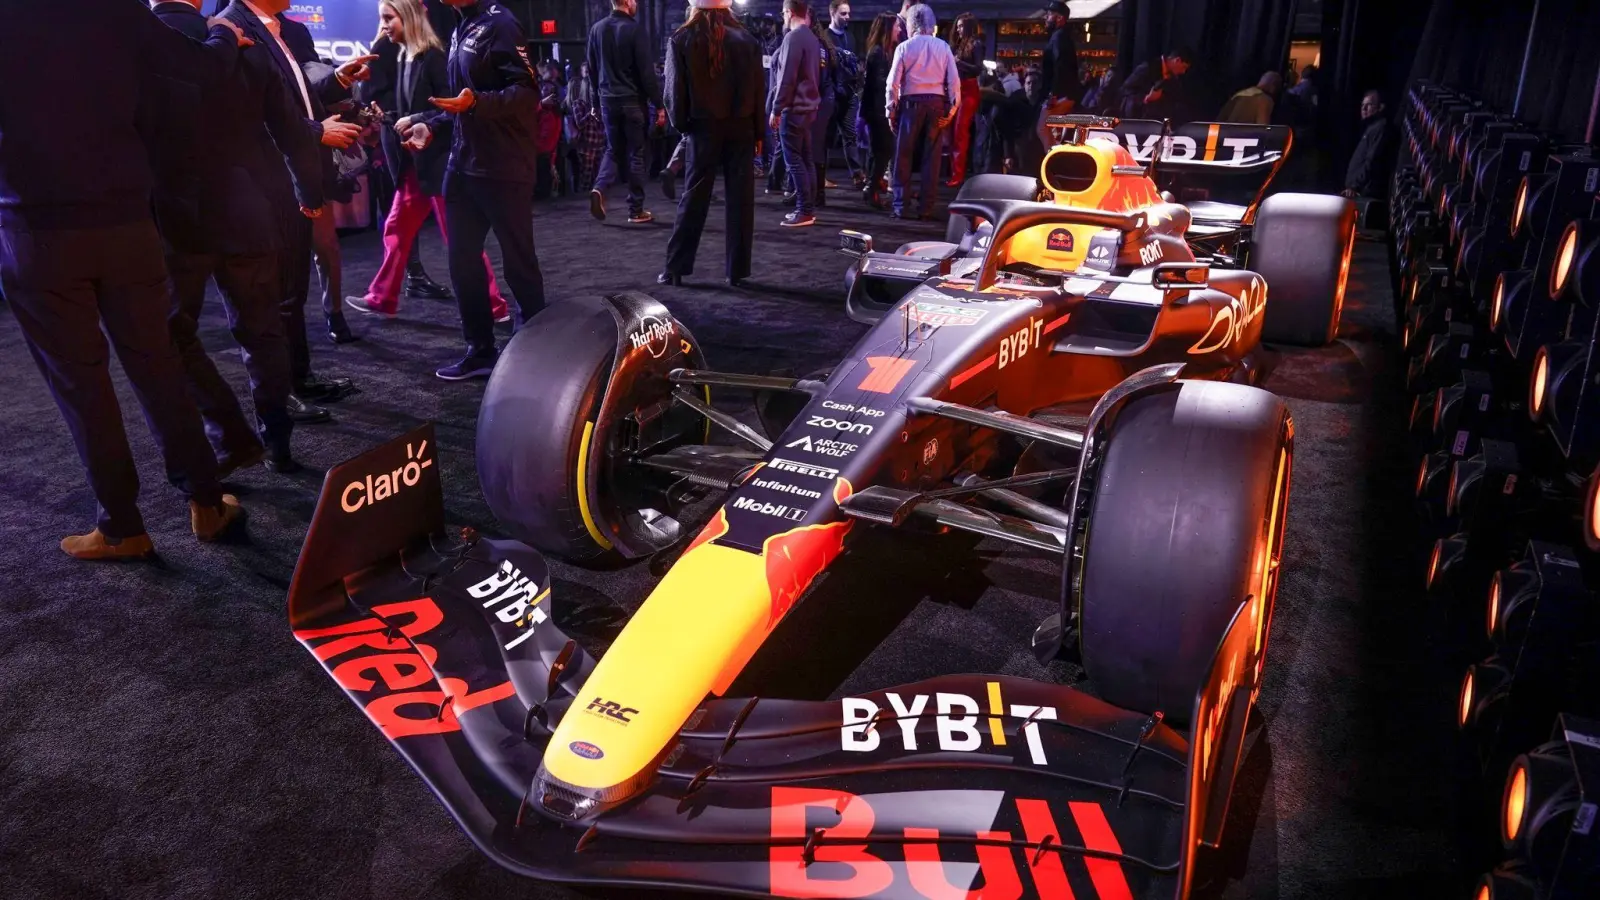 Der neue Formel-1-Rennwagen RB19 von Red Bull Racing wird während einer Veranstaltung enthüllt. (Foto: Seth Wenig/AP/dpa)